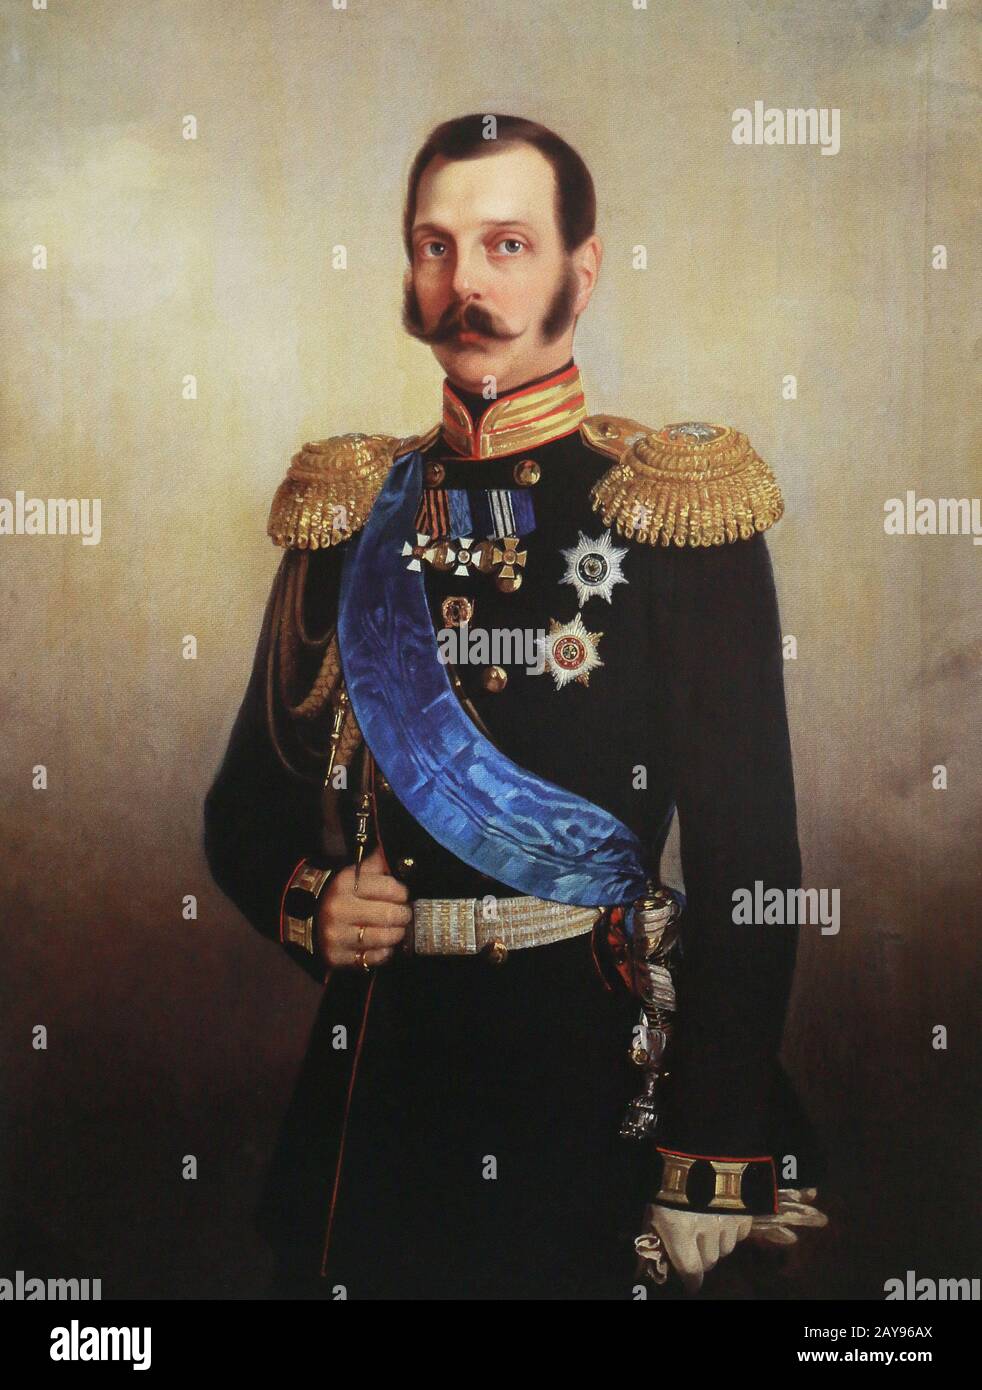 Der russische Kaiser Alexander II. Nikolaevich. Malerei des 19. Jahrhunderts. Stockfoto